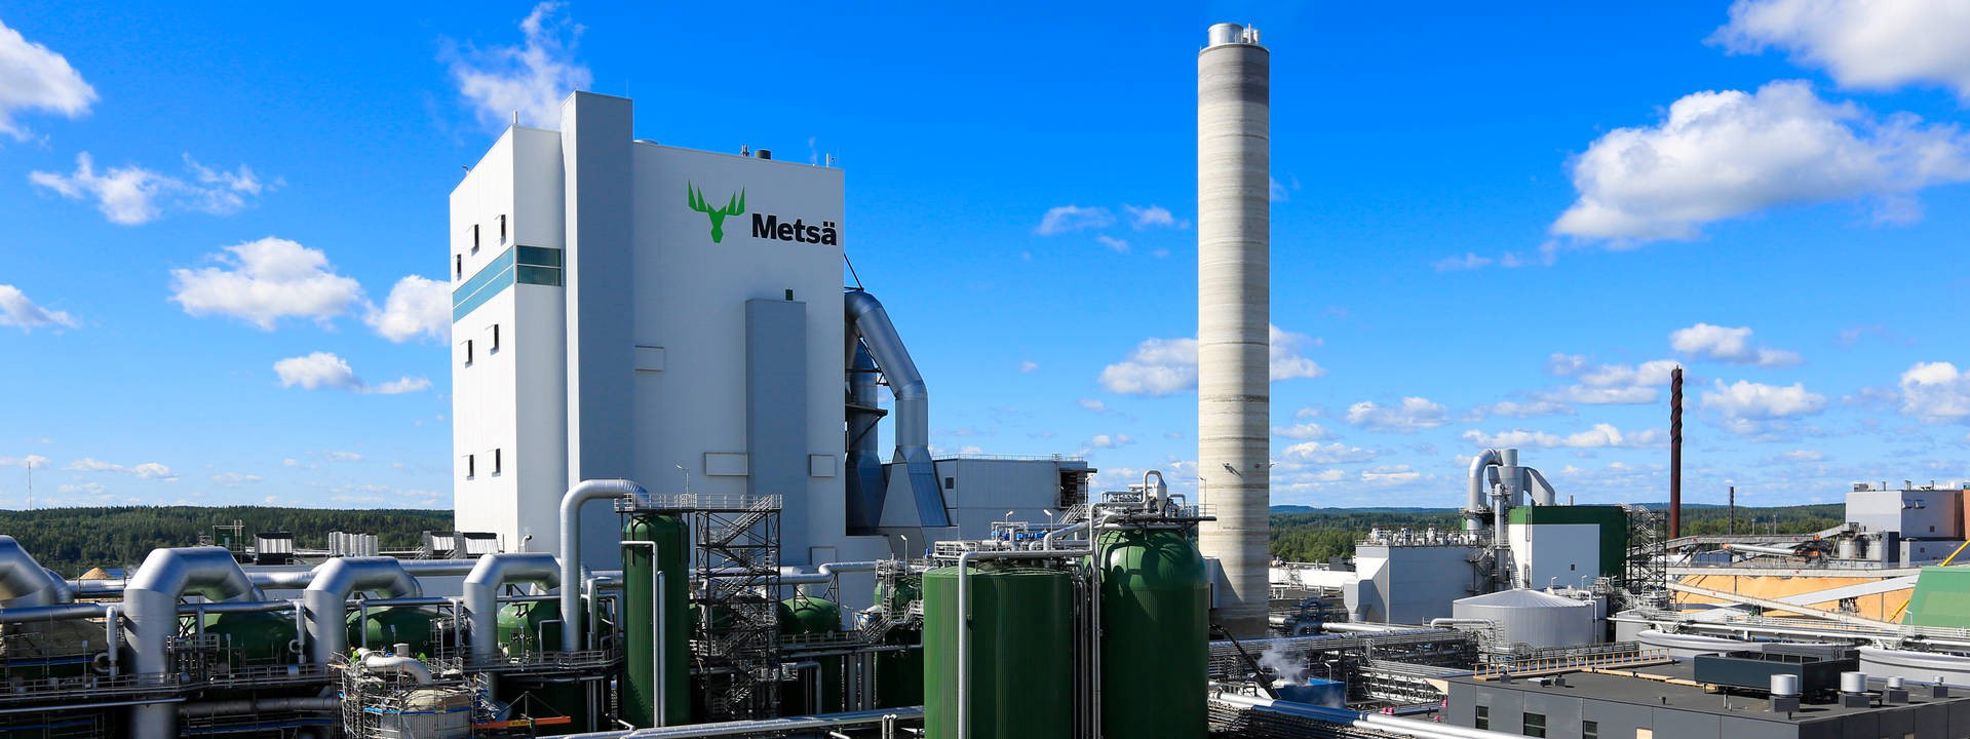 Metsä Group Äänekoksi mill is highly energy efficient